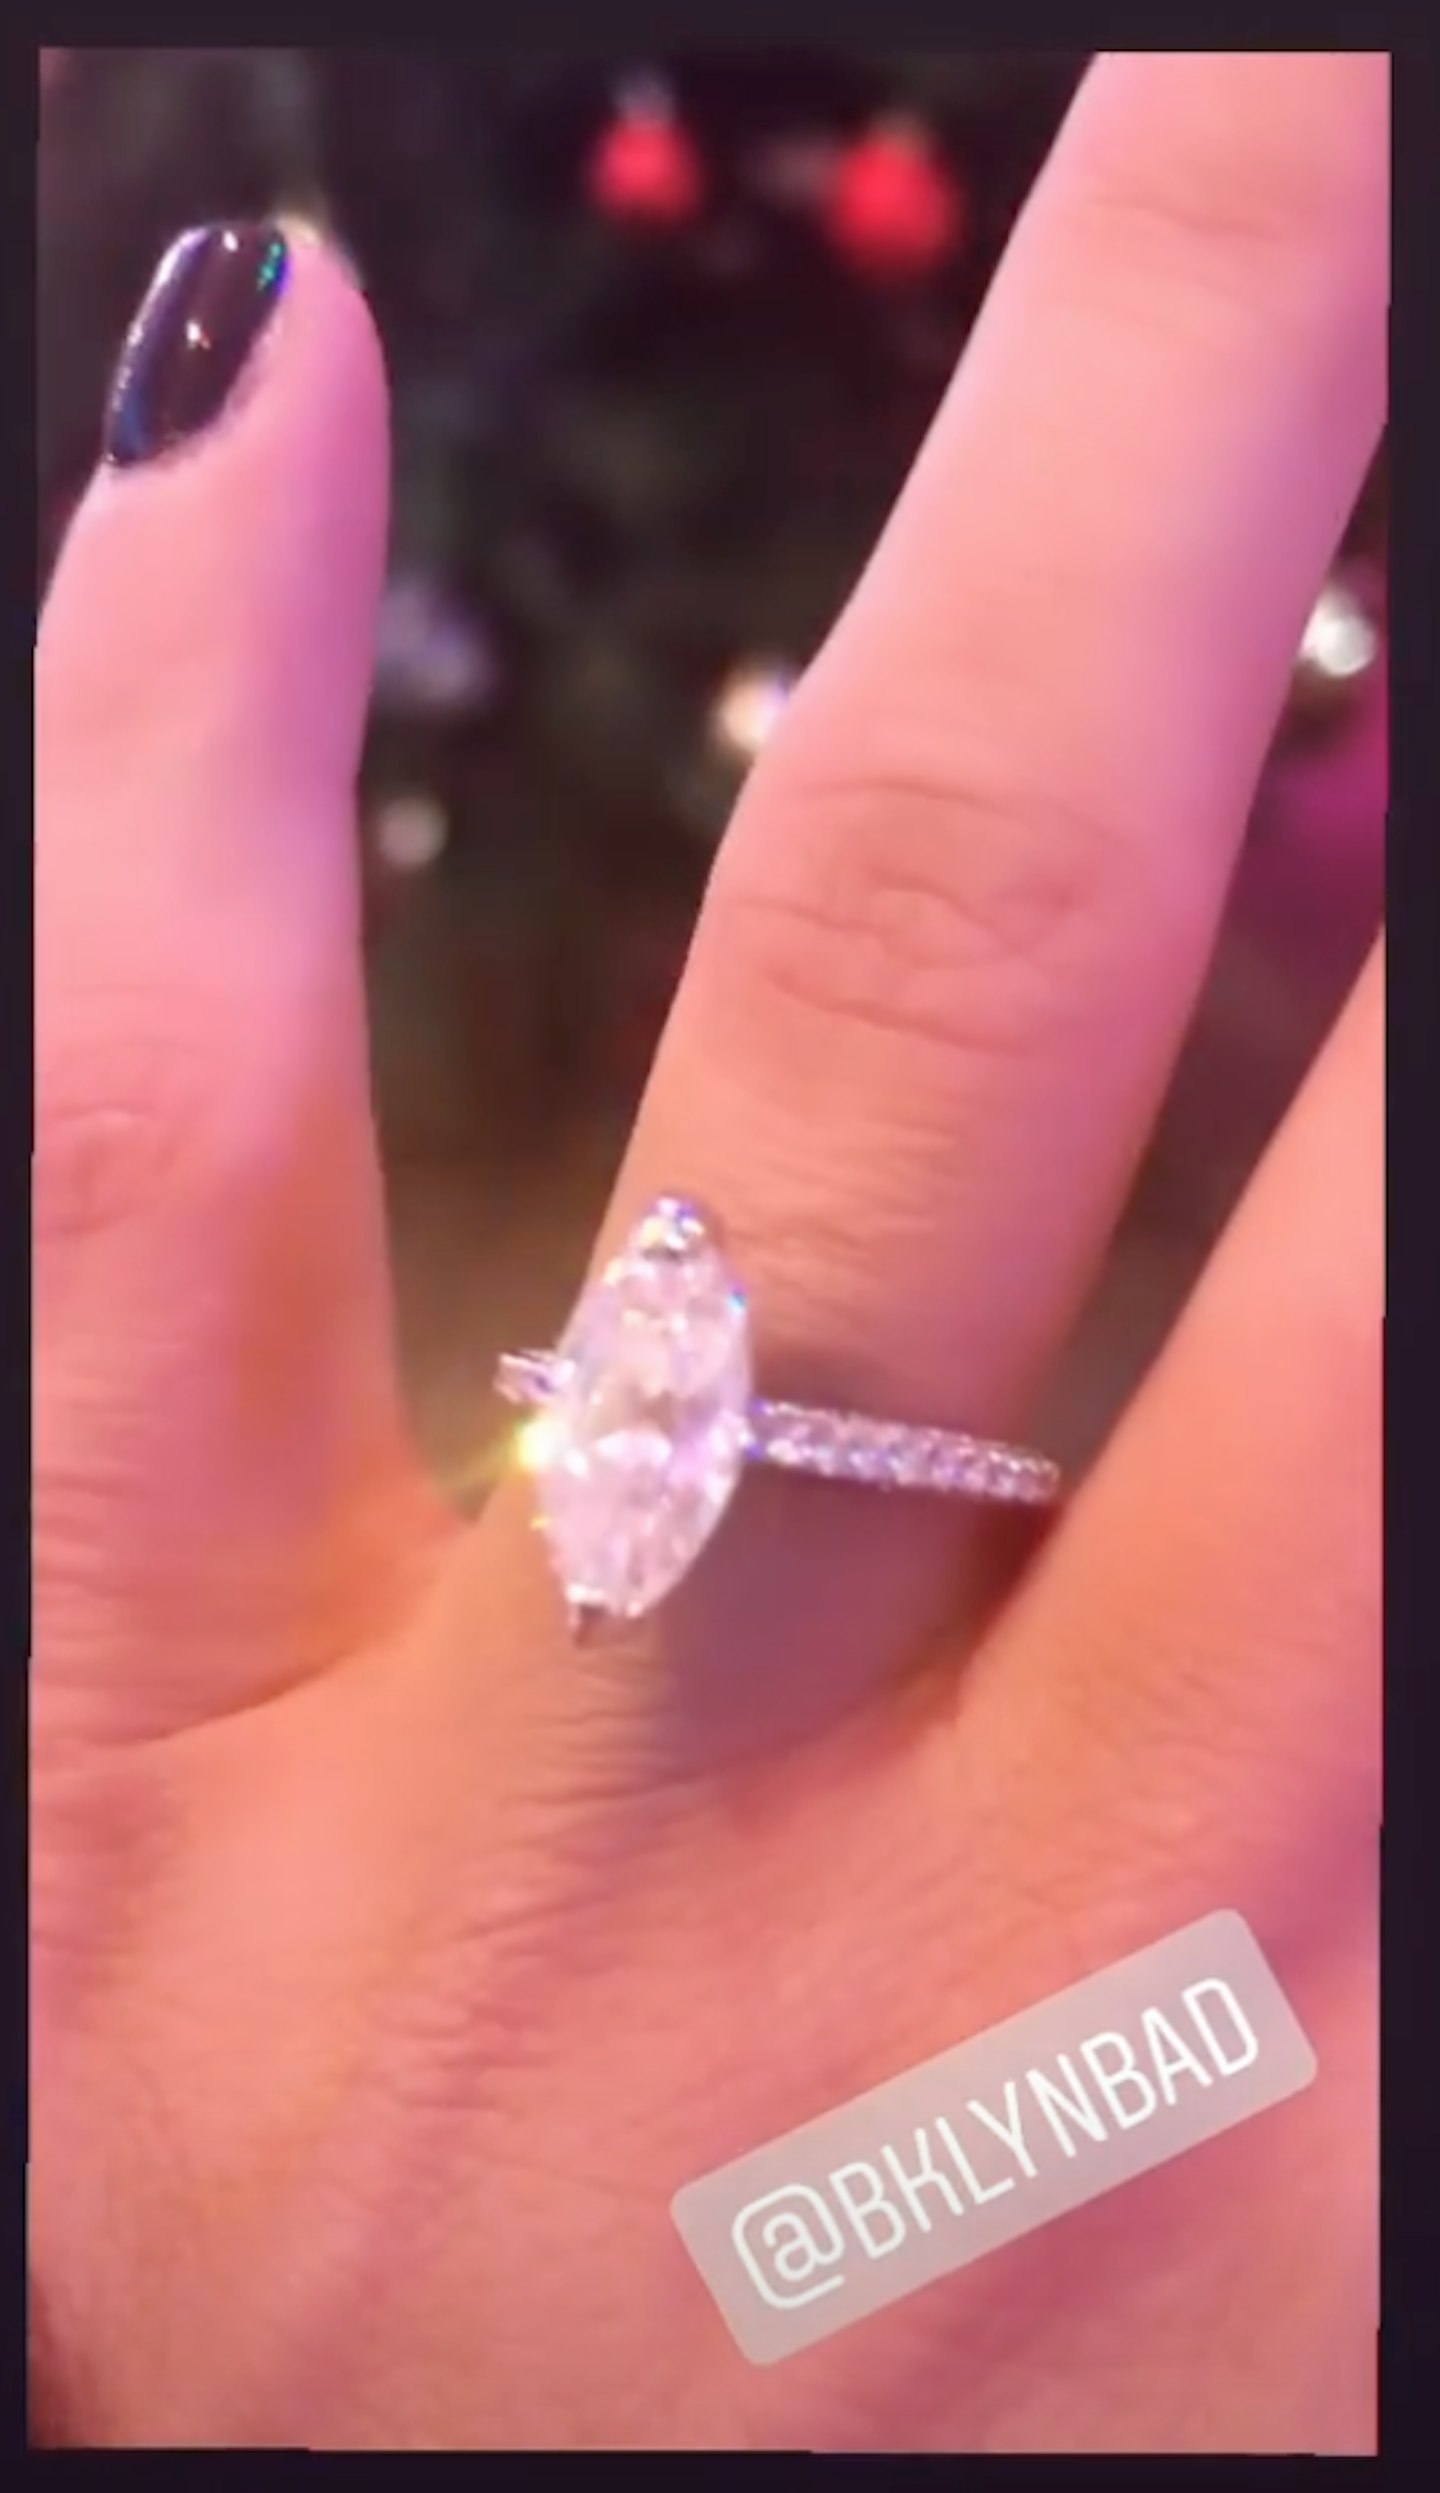 Roxanne Pallett engagement ring